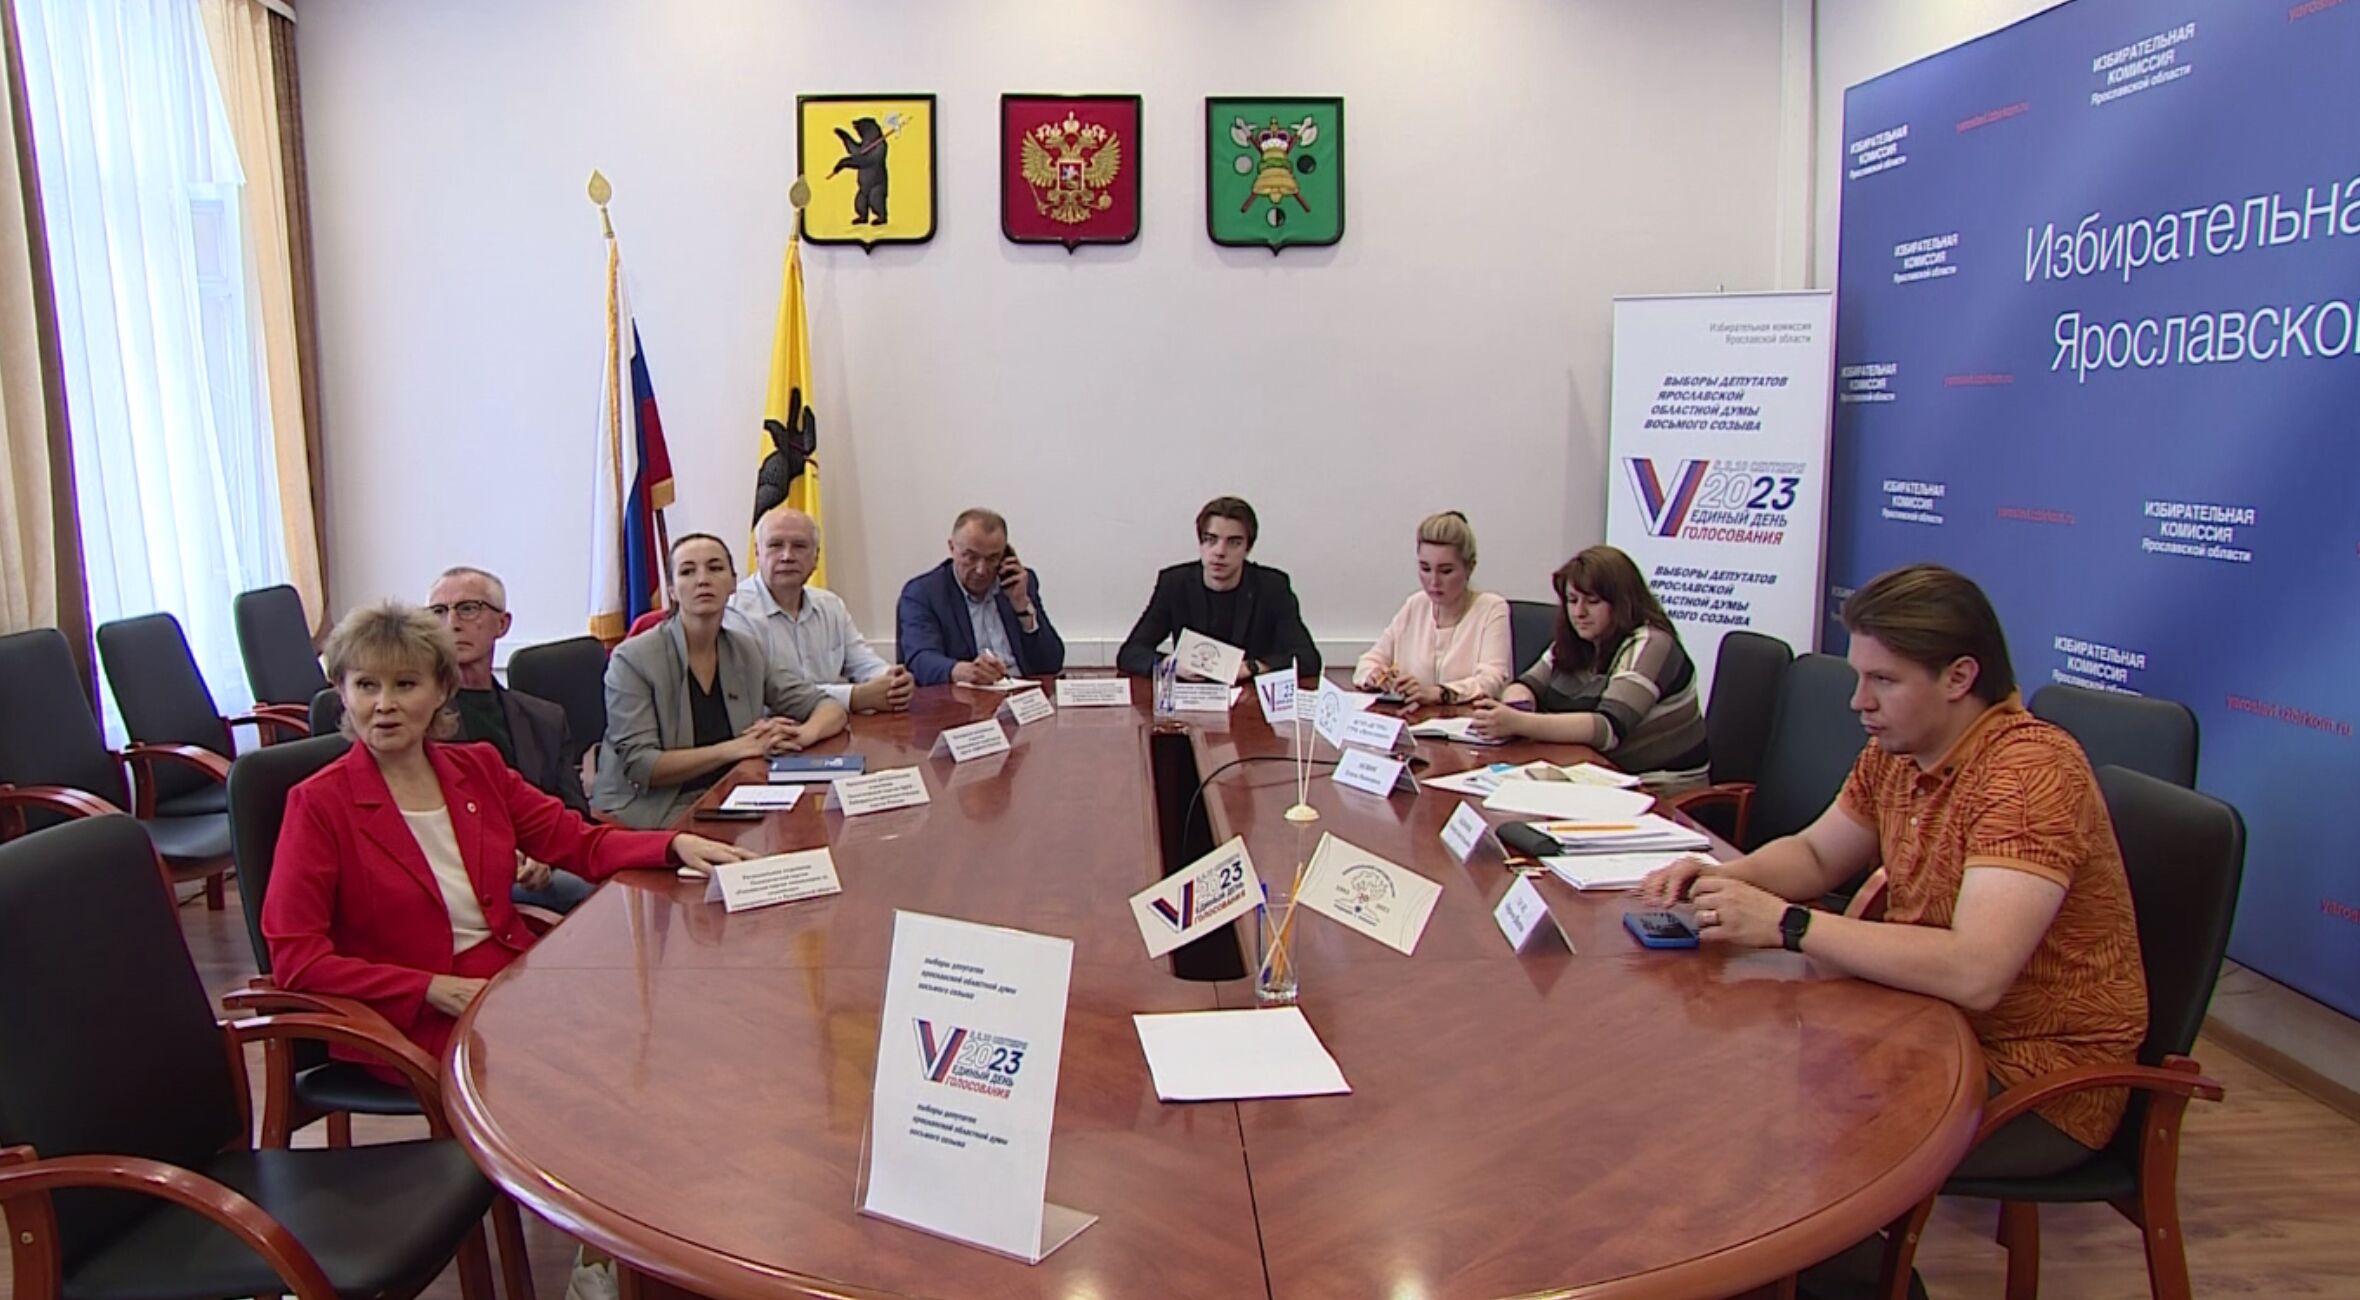 Члены областной избирательной комиссии поучаствовали в онлайн-конференции |  Первый ярославский телеканал